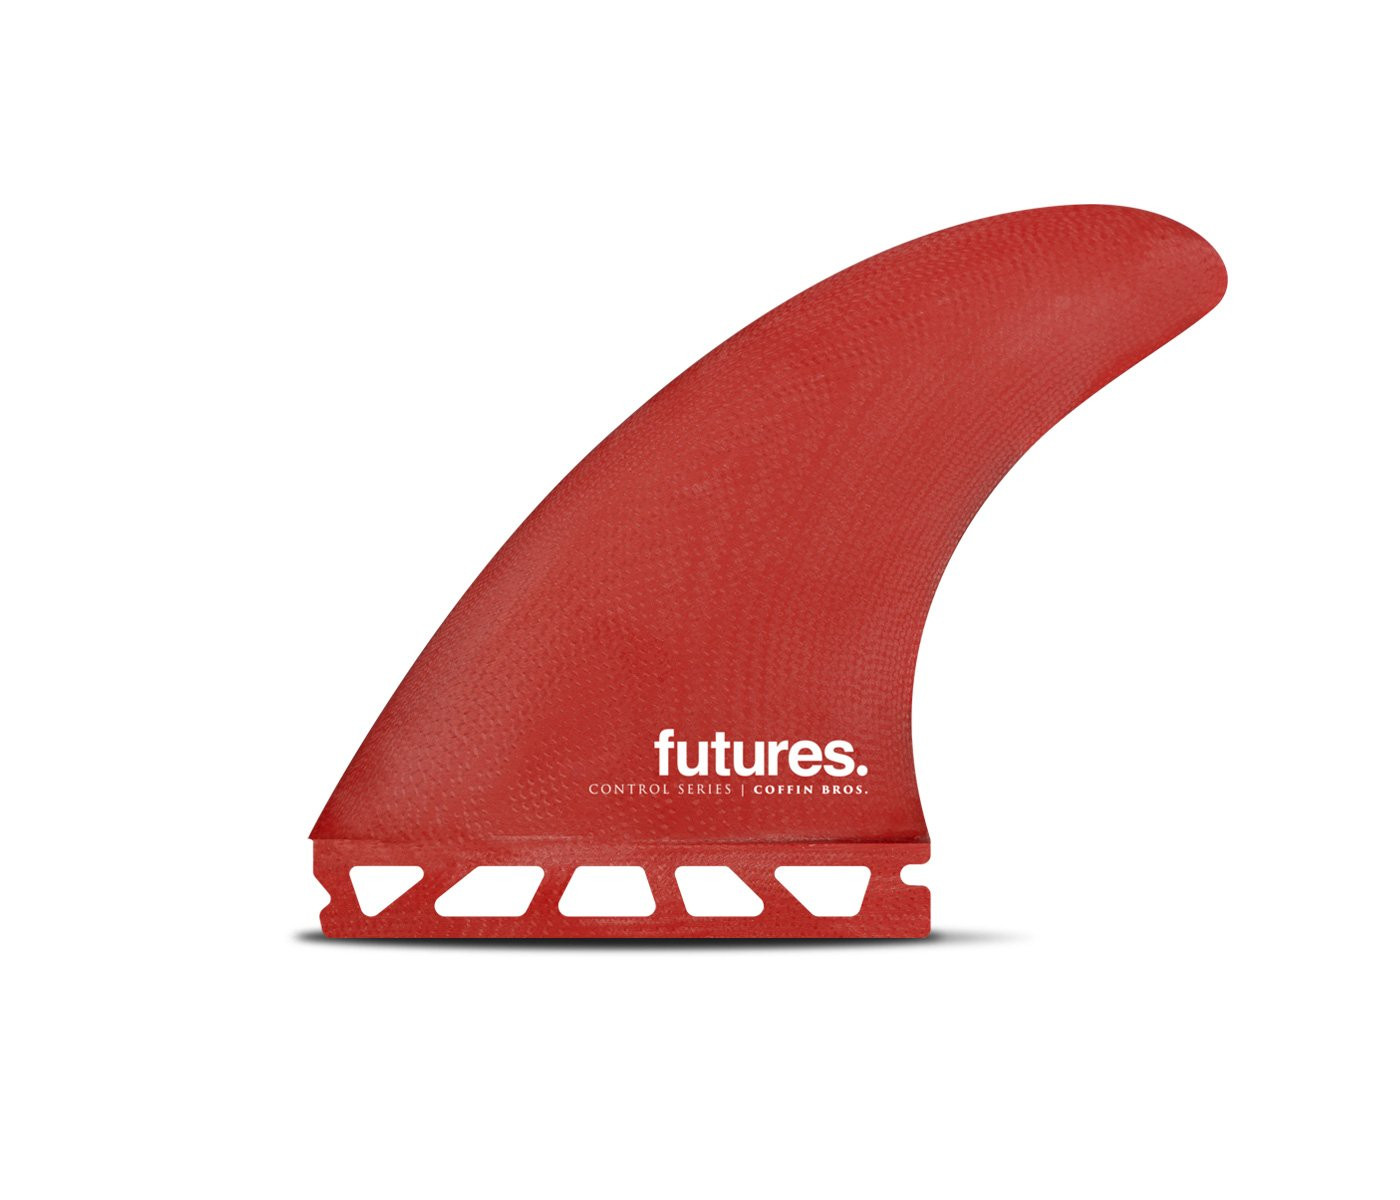 Quillas Thruster - Coffin Bros Control Series Red / Black fiberglass, FUTURES.